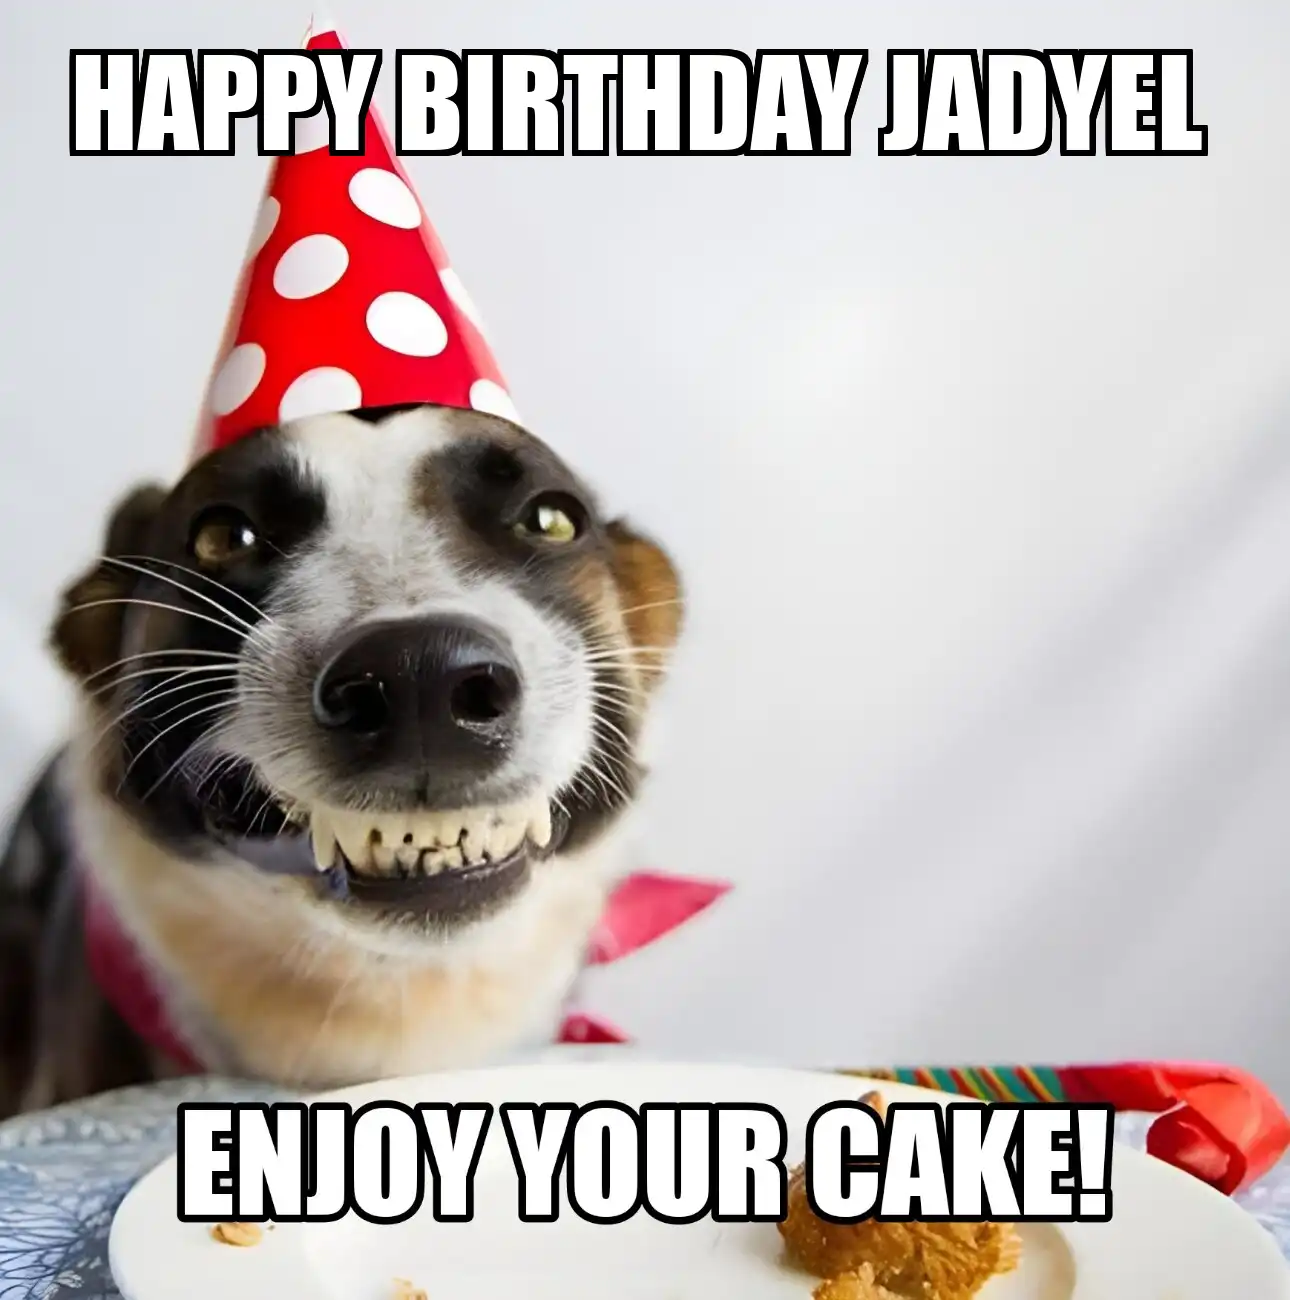 Happy Birthday Jadyel Enjoy Your Cake Dog Meme